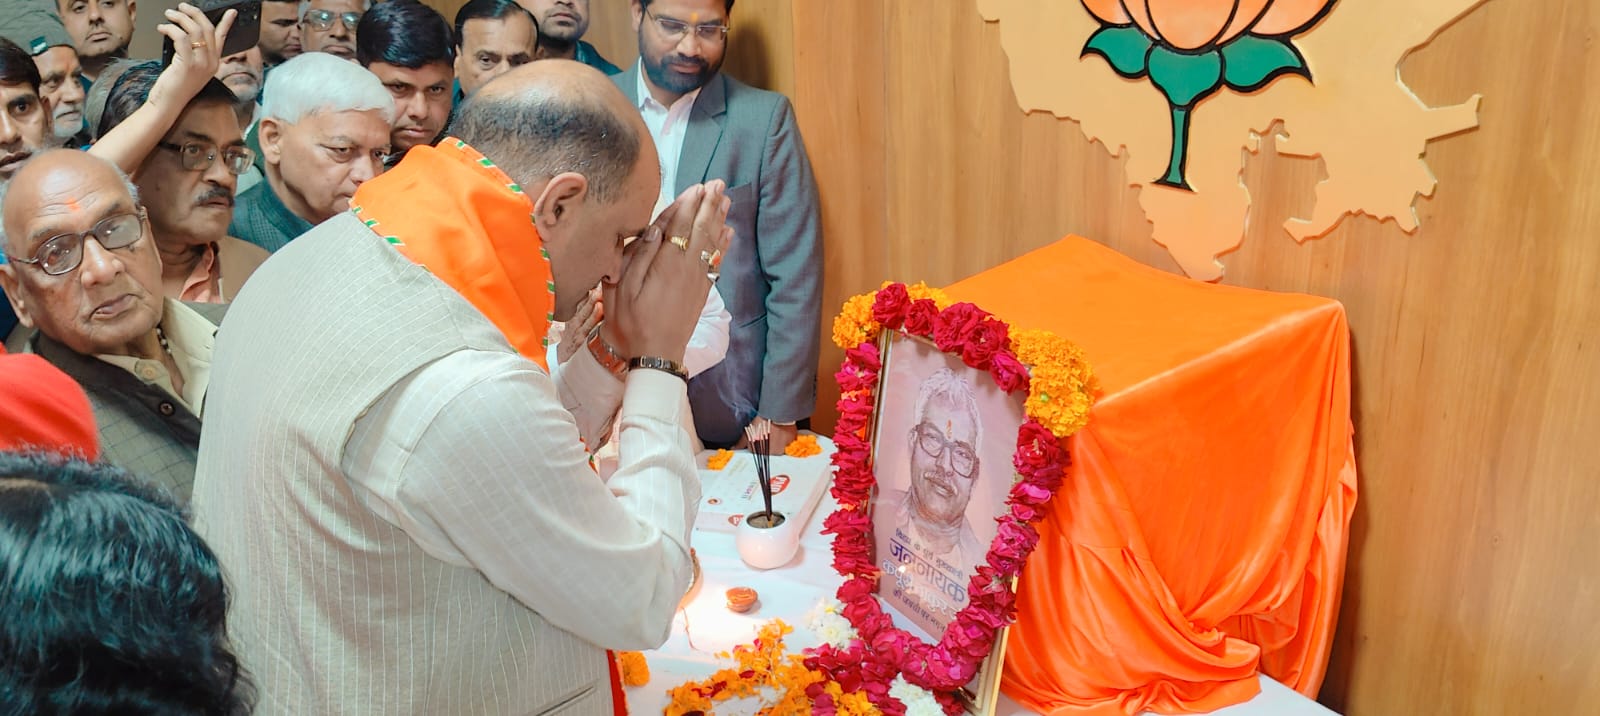 BJP State President CP Joshi paid tribute to former Bihar Chief Minister Karpoori Thakur on the 100th birth anniversary: भाजपा प्रदेश अध्यक्ष सीपी जोशी ने बिहार के पूर्व मुख्यमंत्री कर्पूरी ठाकुर की 100वीं जयन्ती पर श्रद्धांजलि अर्पित की